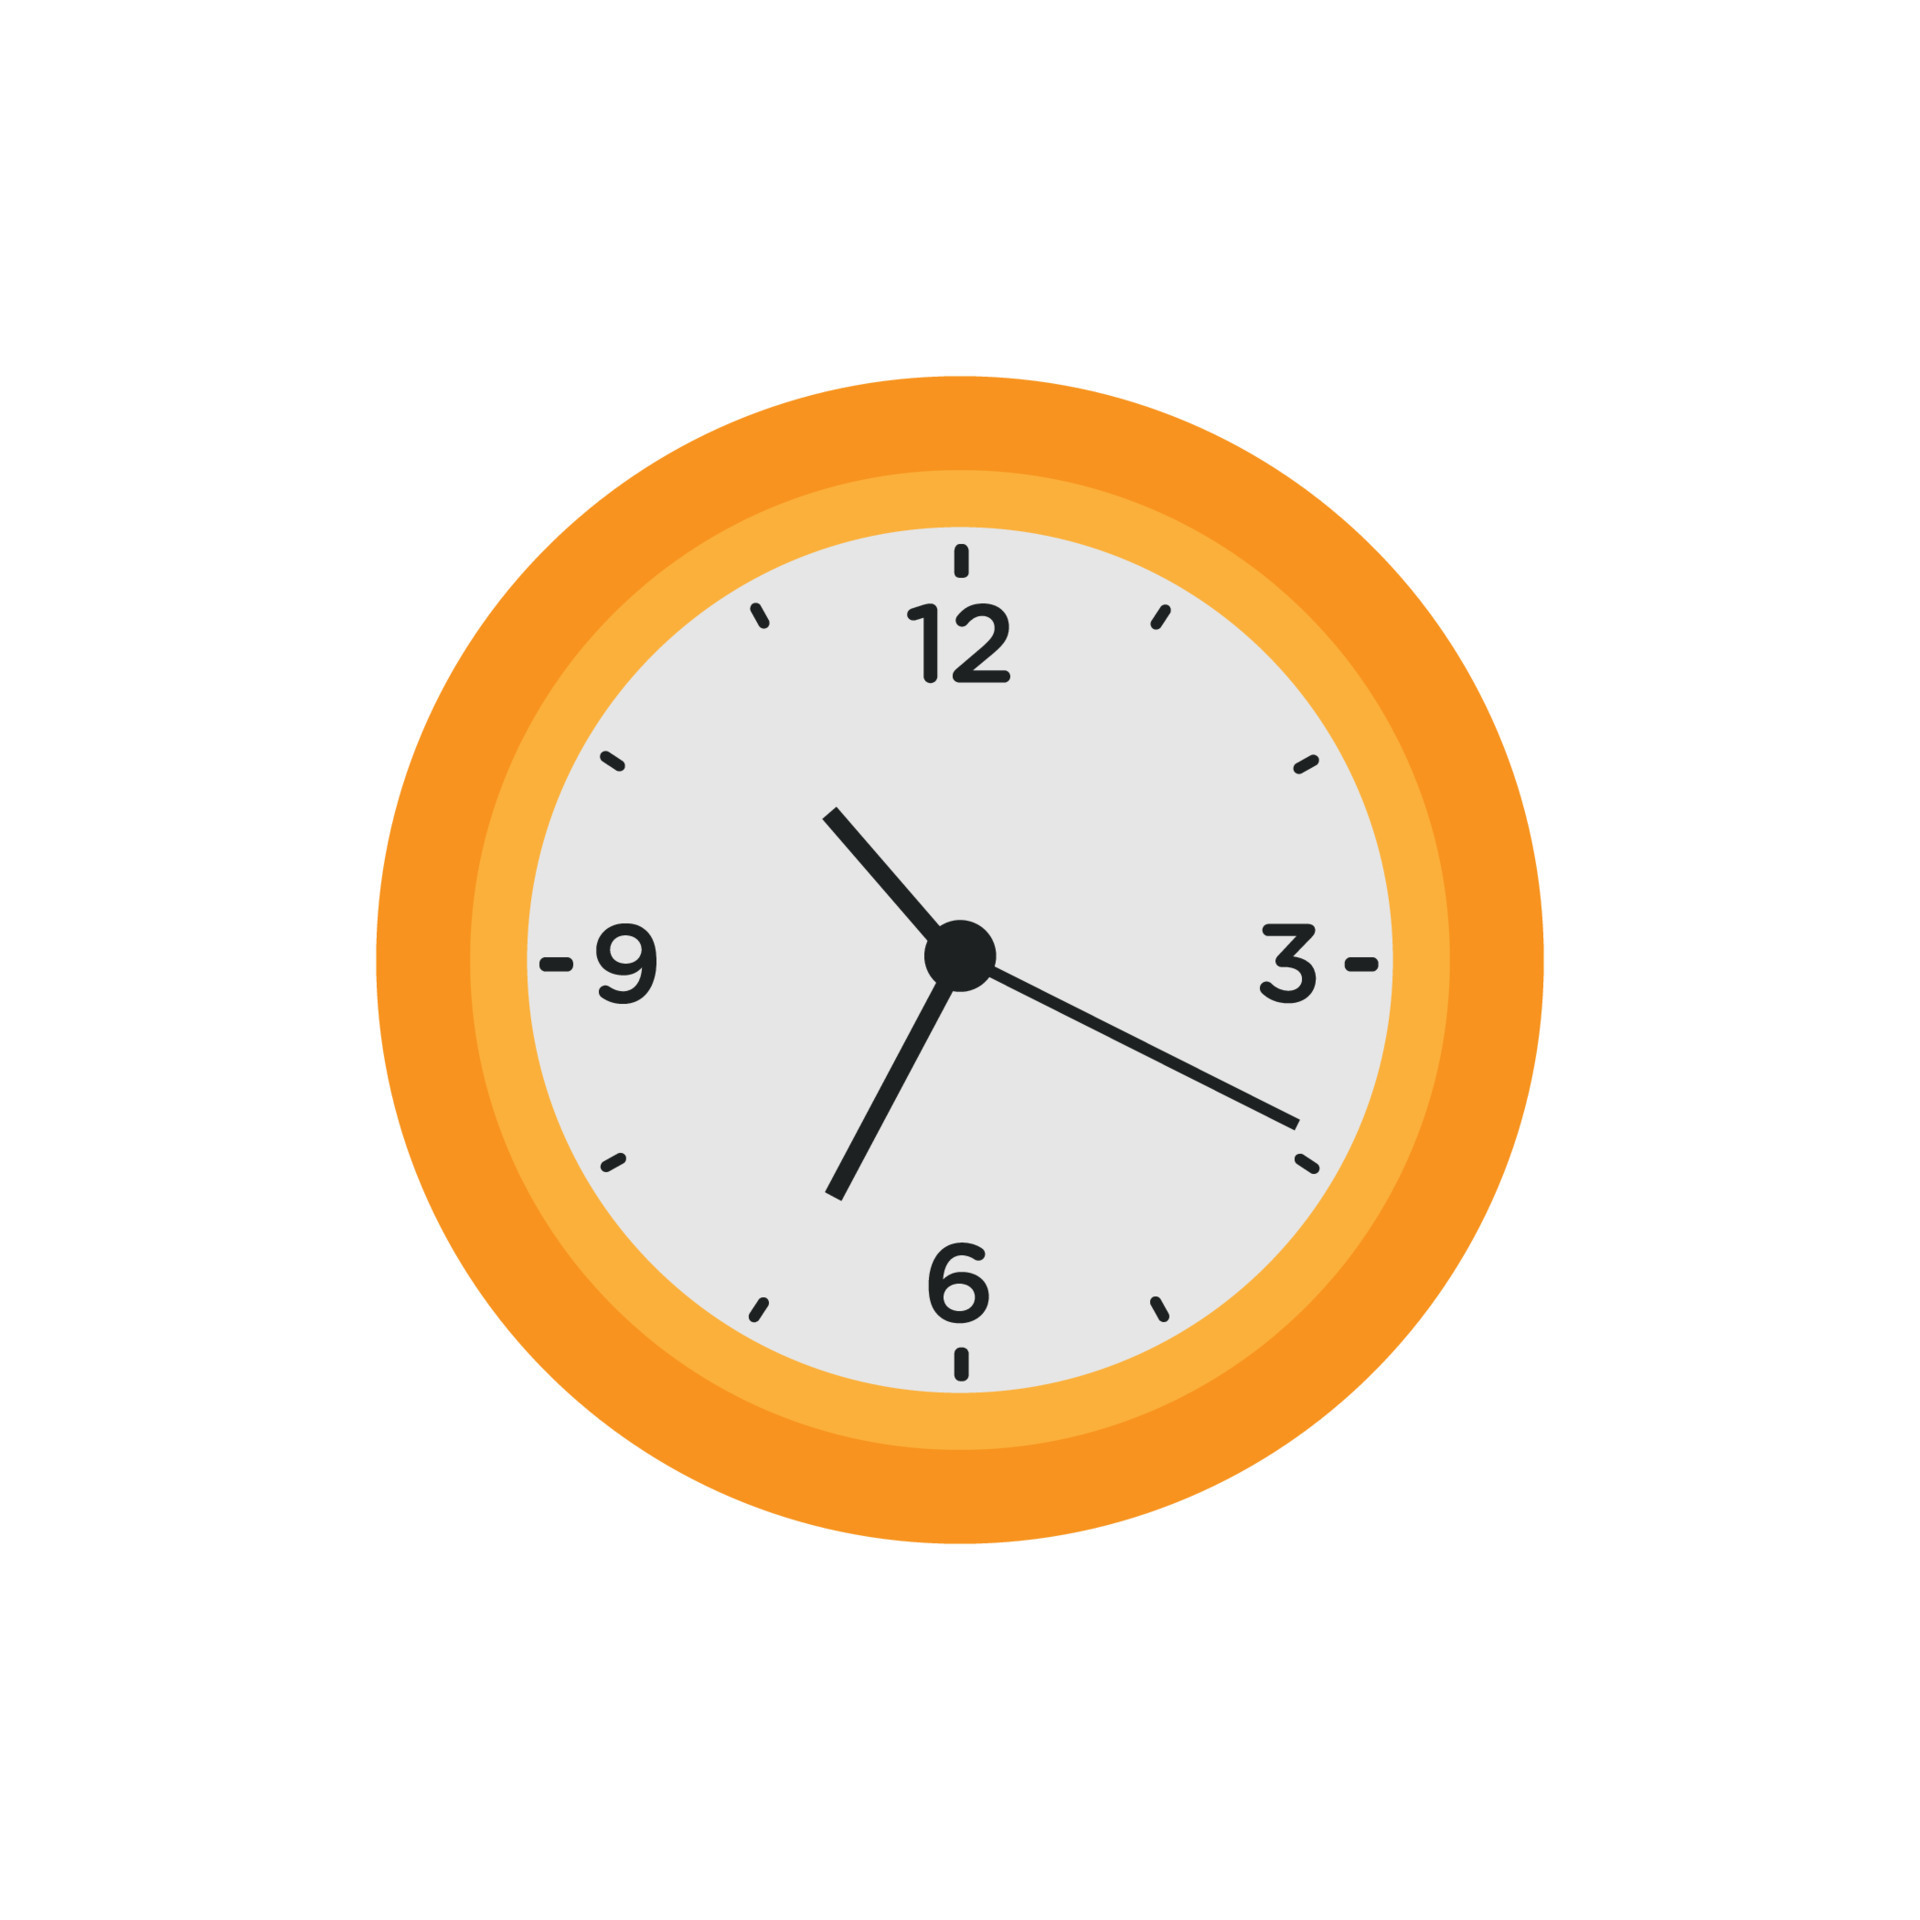 Le Visage De L'horloge Avec Des Icônes Météo Au Lieu D'heures Clip Art  Libres De Droits, Svg, Vecteurs Et Illustration. Image 47463689